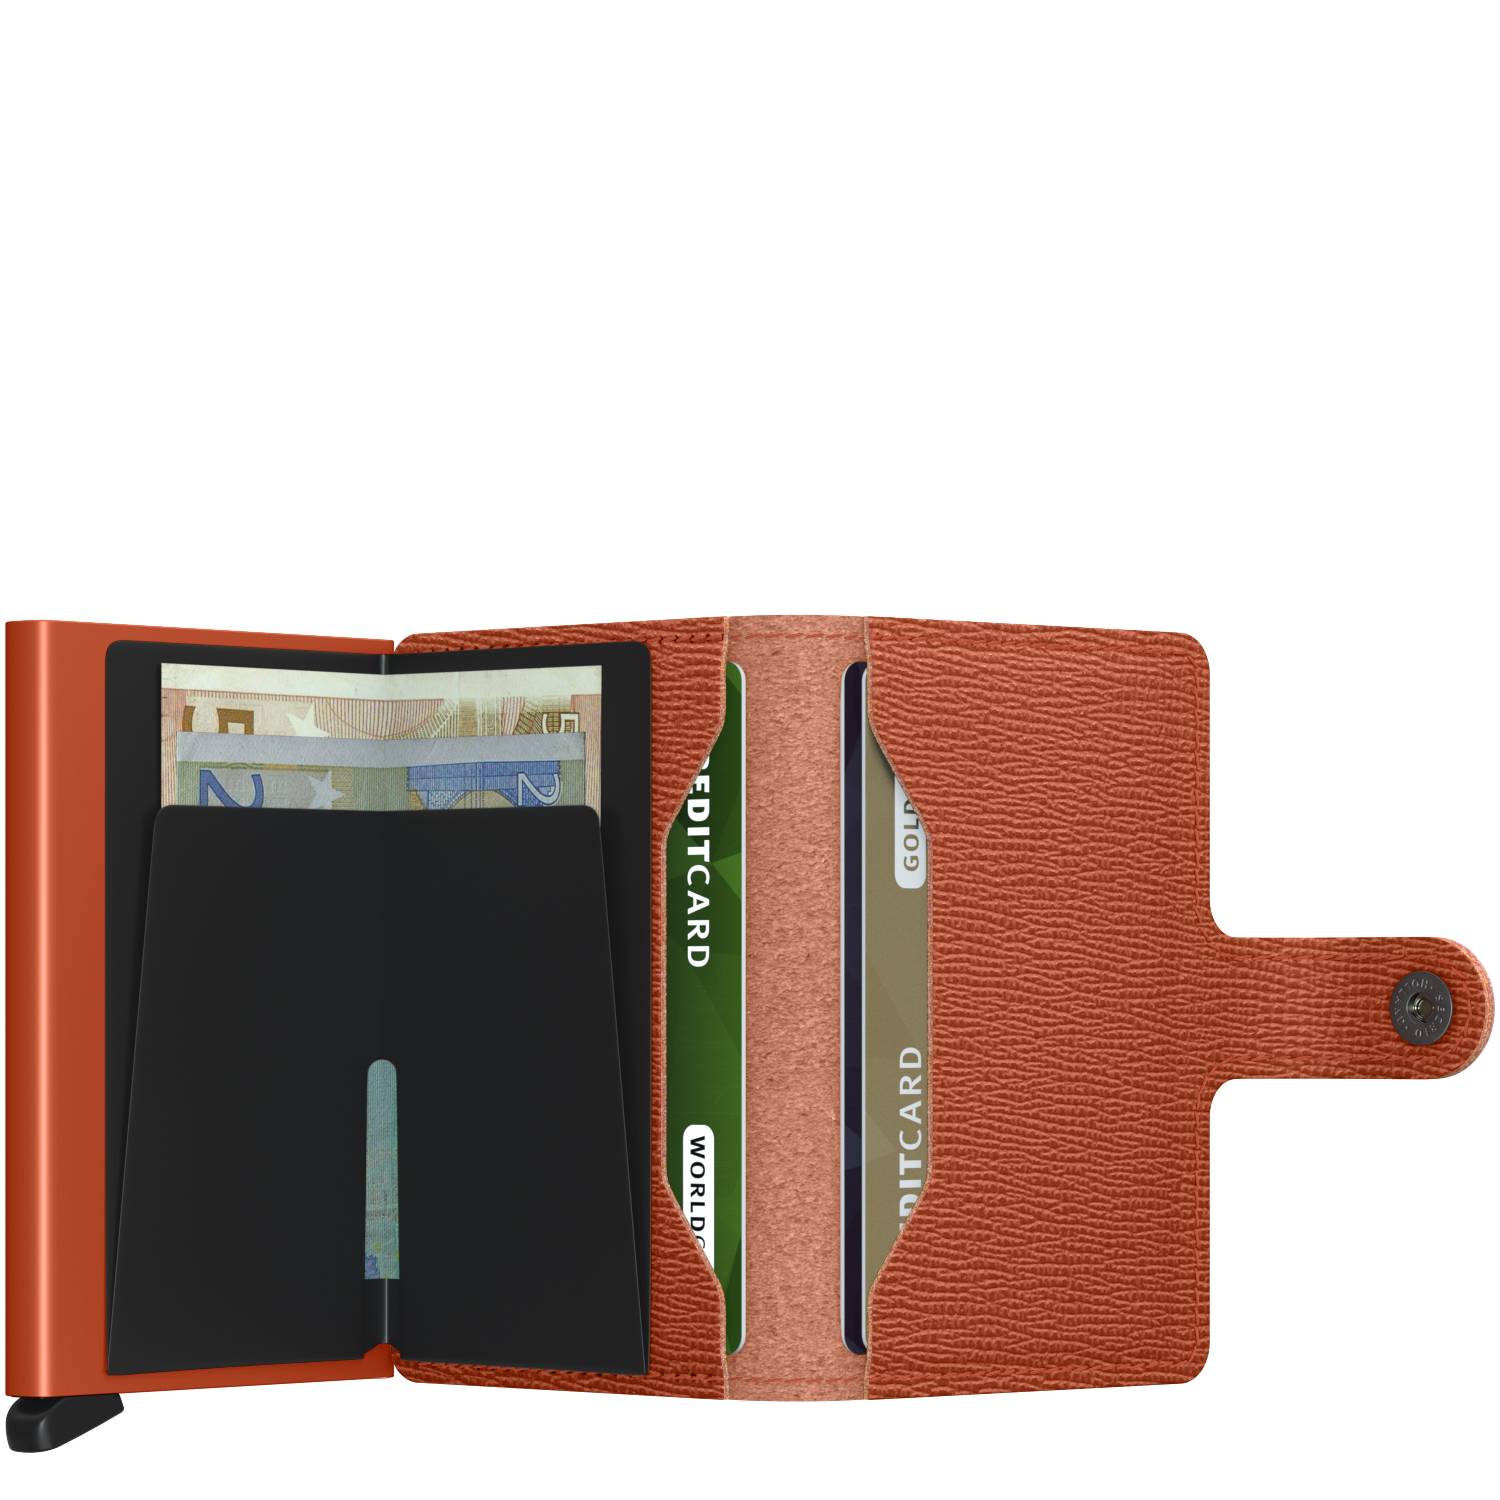 Porte-cartes cuir texturé Secrid Miniwallet Crisple MC Pumpkin (Orange citrouille) rangements internes